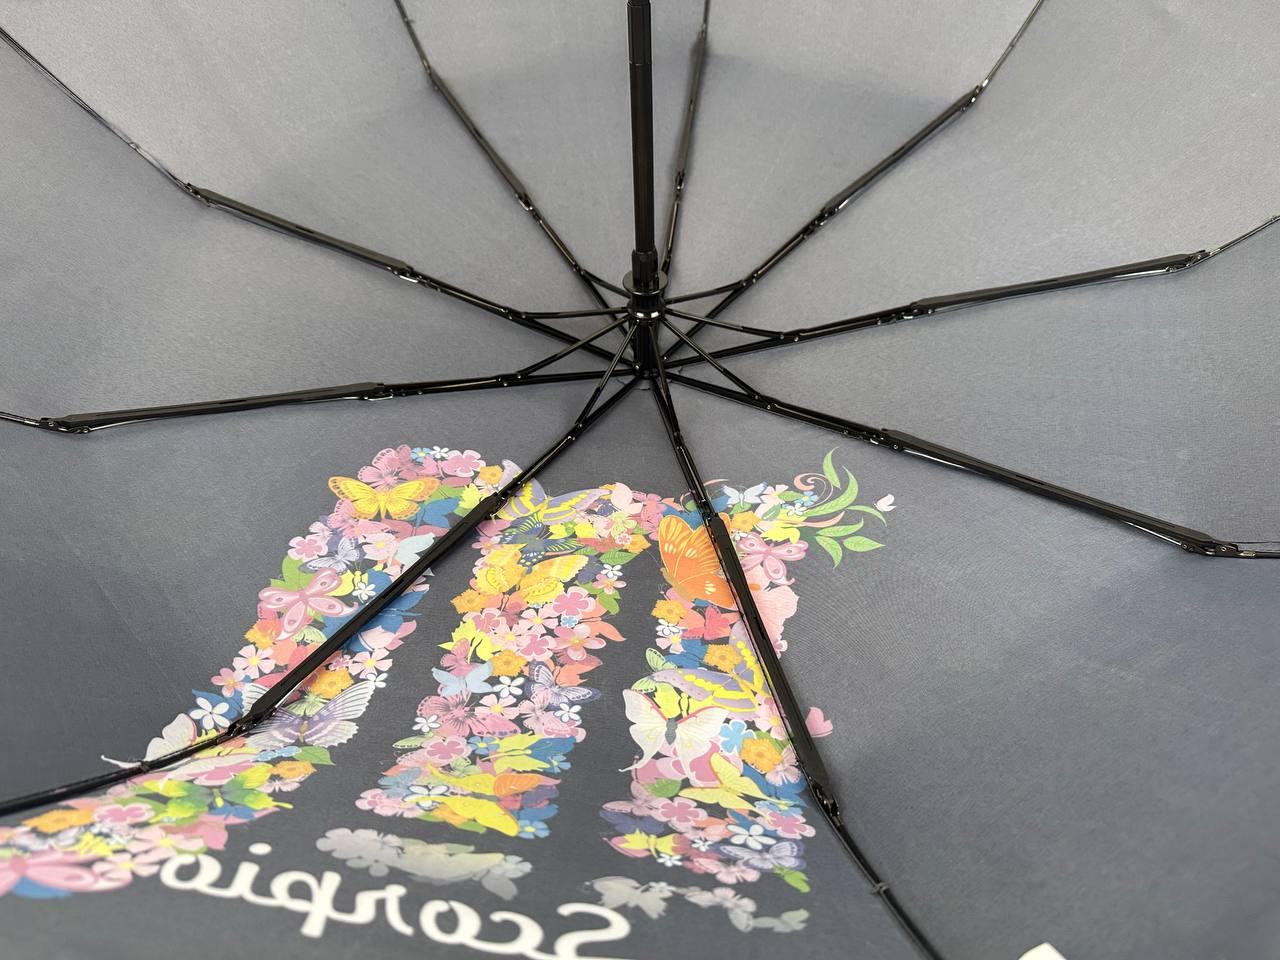 Женский складной зонтик полный автомат Rain 98 см черный - фото 6